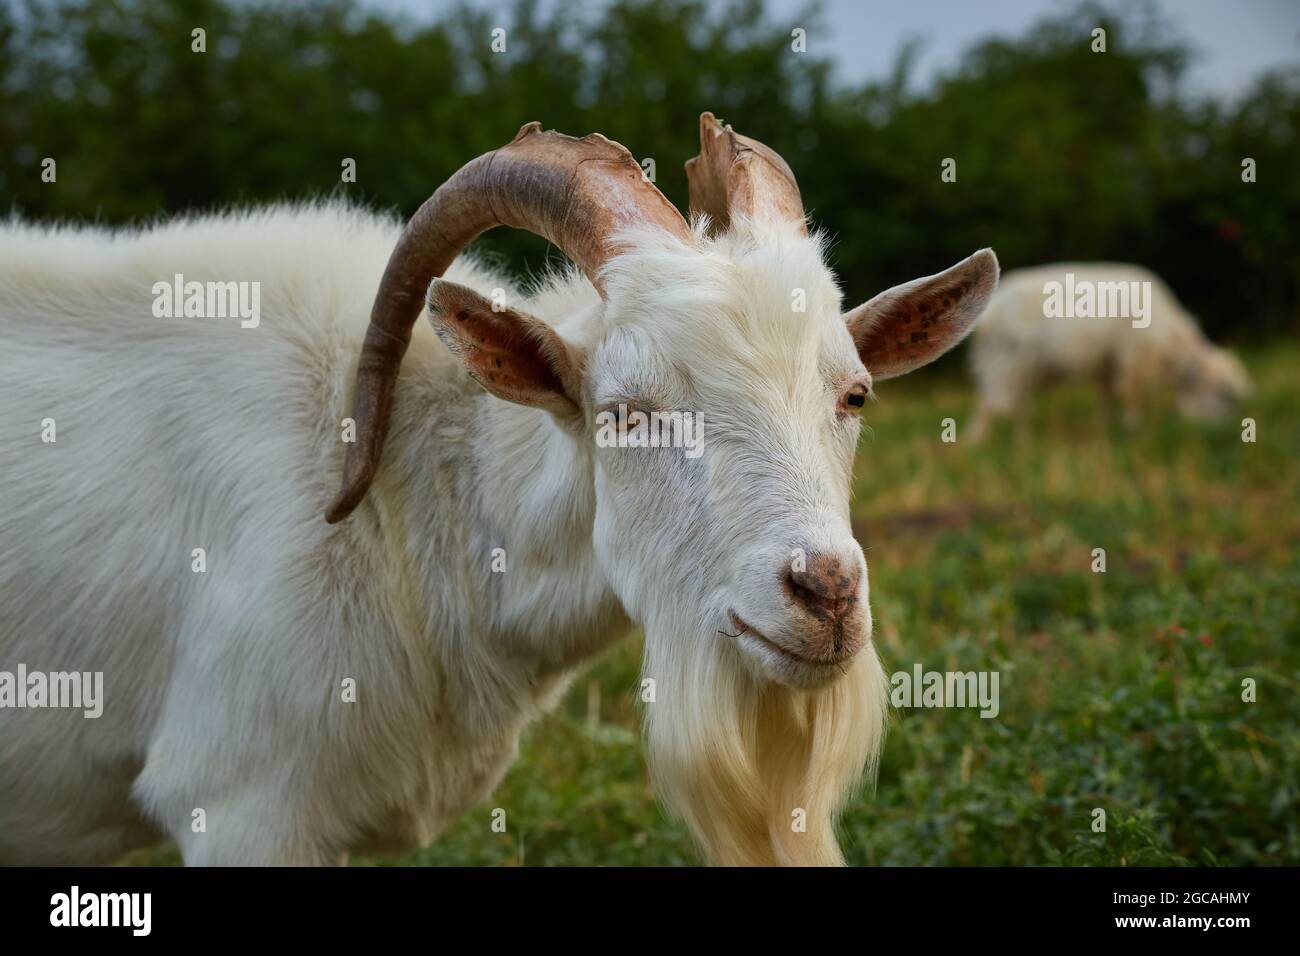 Un mâle de chèvre blanc avec de grandes cornes incurvées se pare d'un pâturage vert Banque D'Images